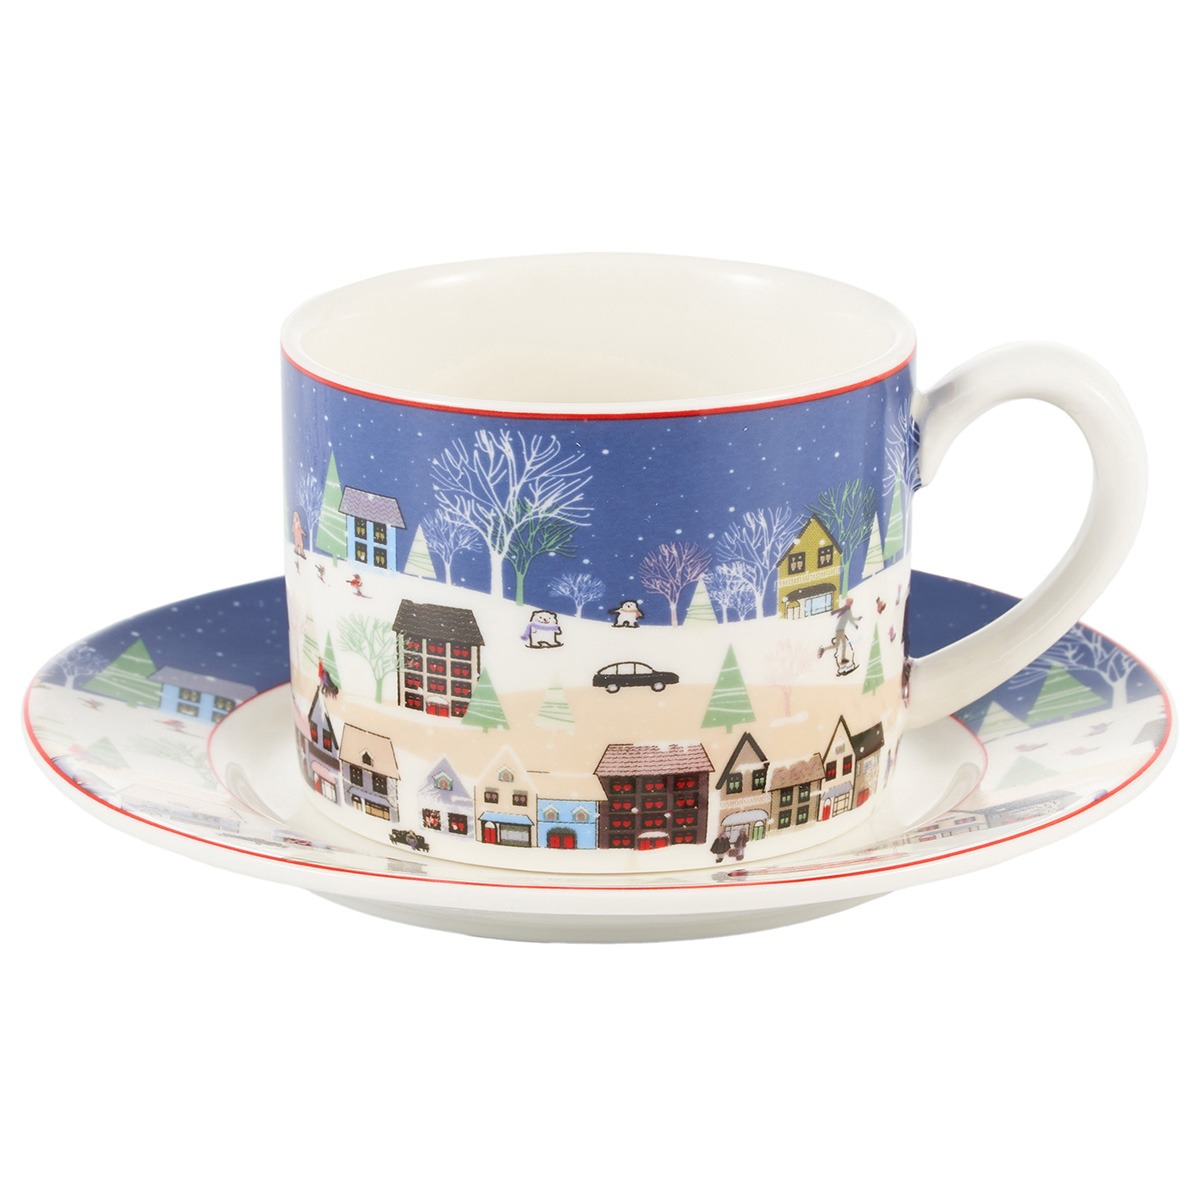 Чайная пара Gipfel Christmas фарфор синий чашка 250 мл, блюдце 14 см пара чайная gipfel blanche чашка и блюдце